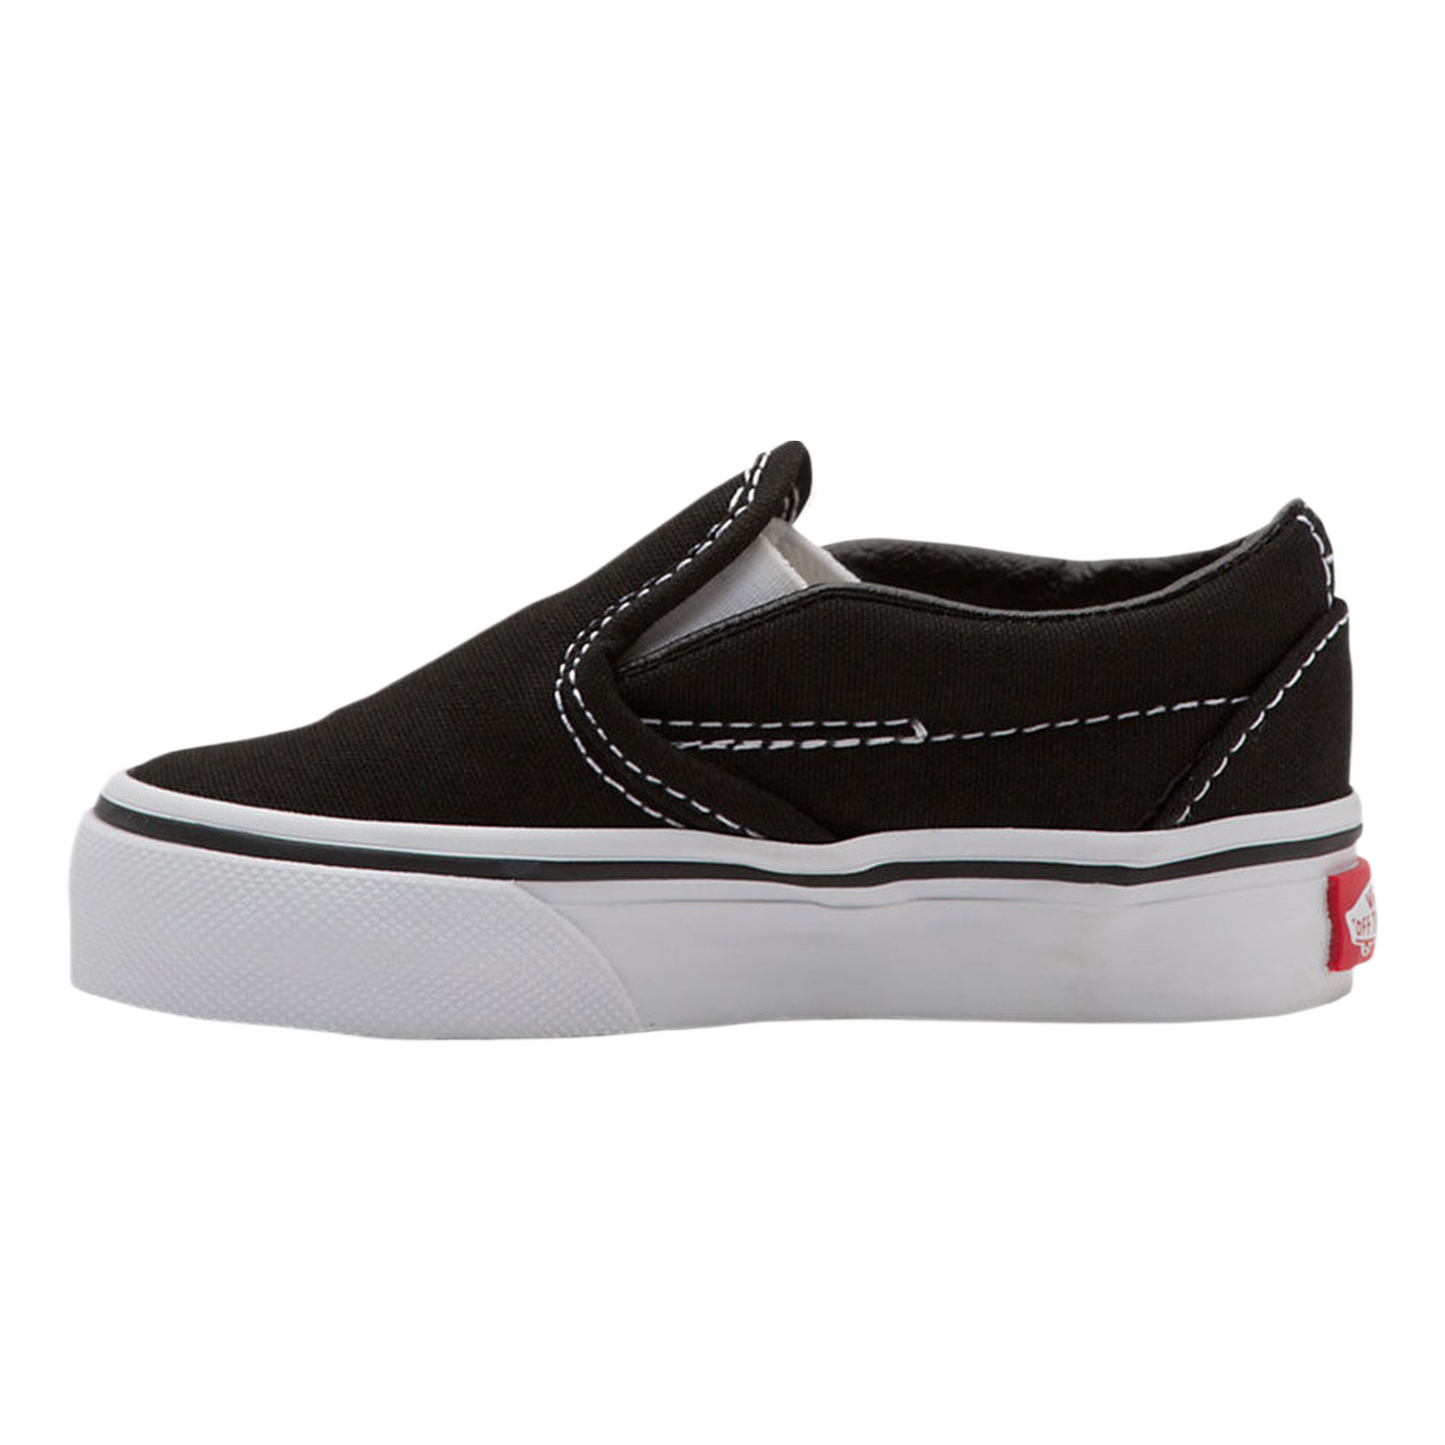 Vans Toddler Classic Slip-On Shoes Black VN000EX8BLK